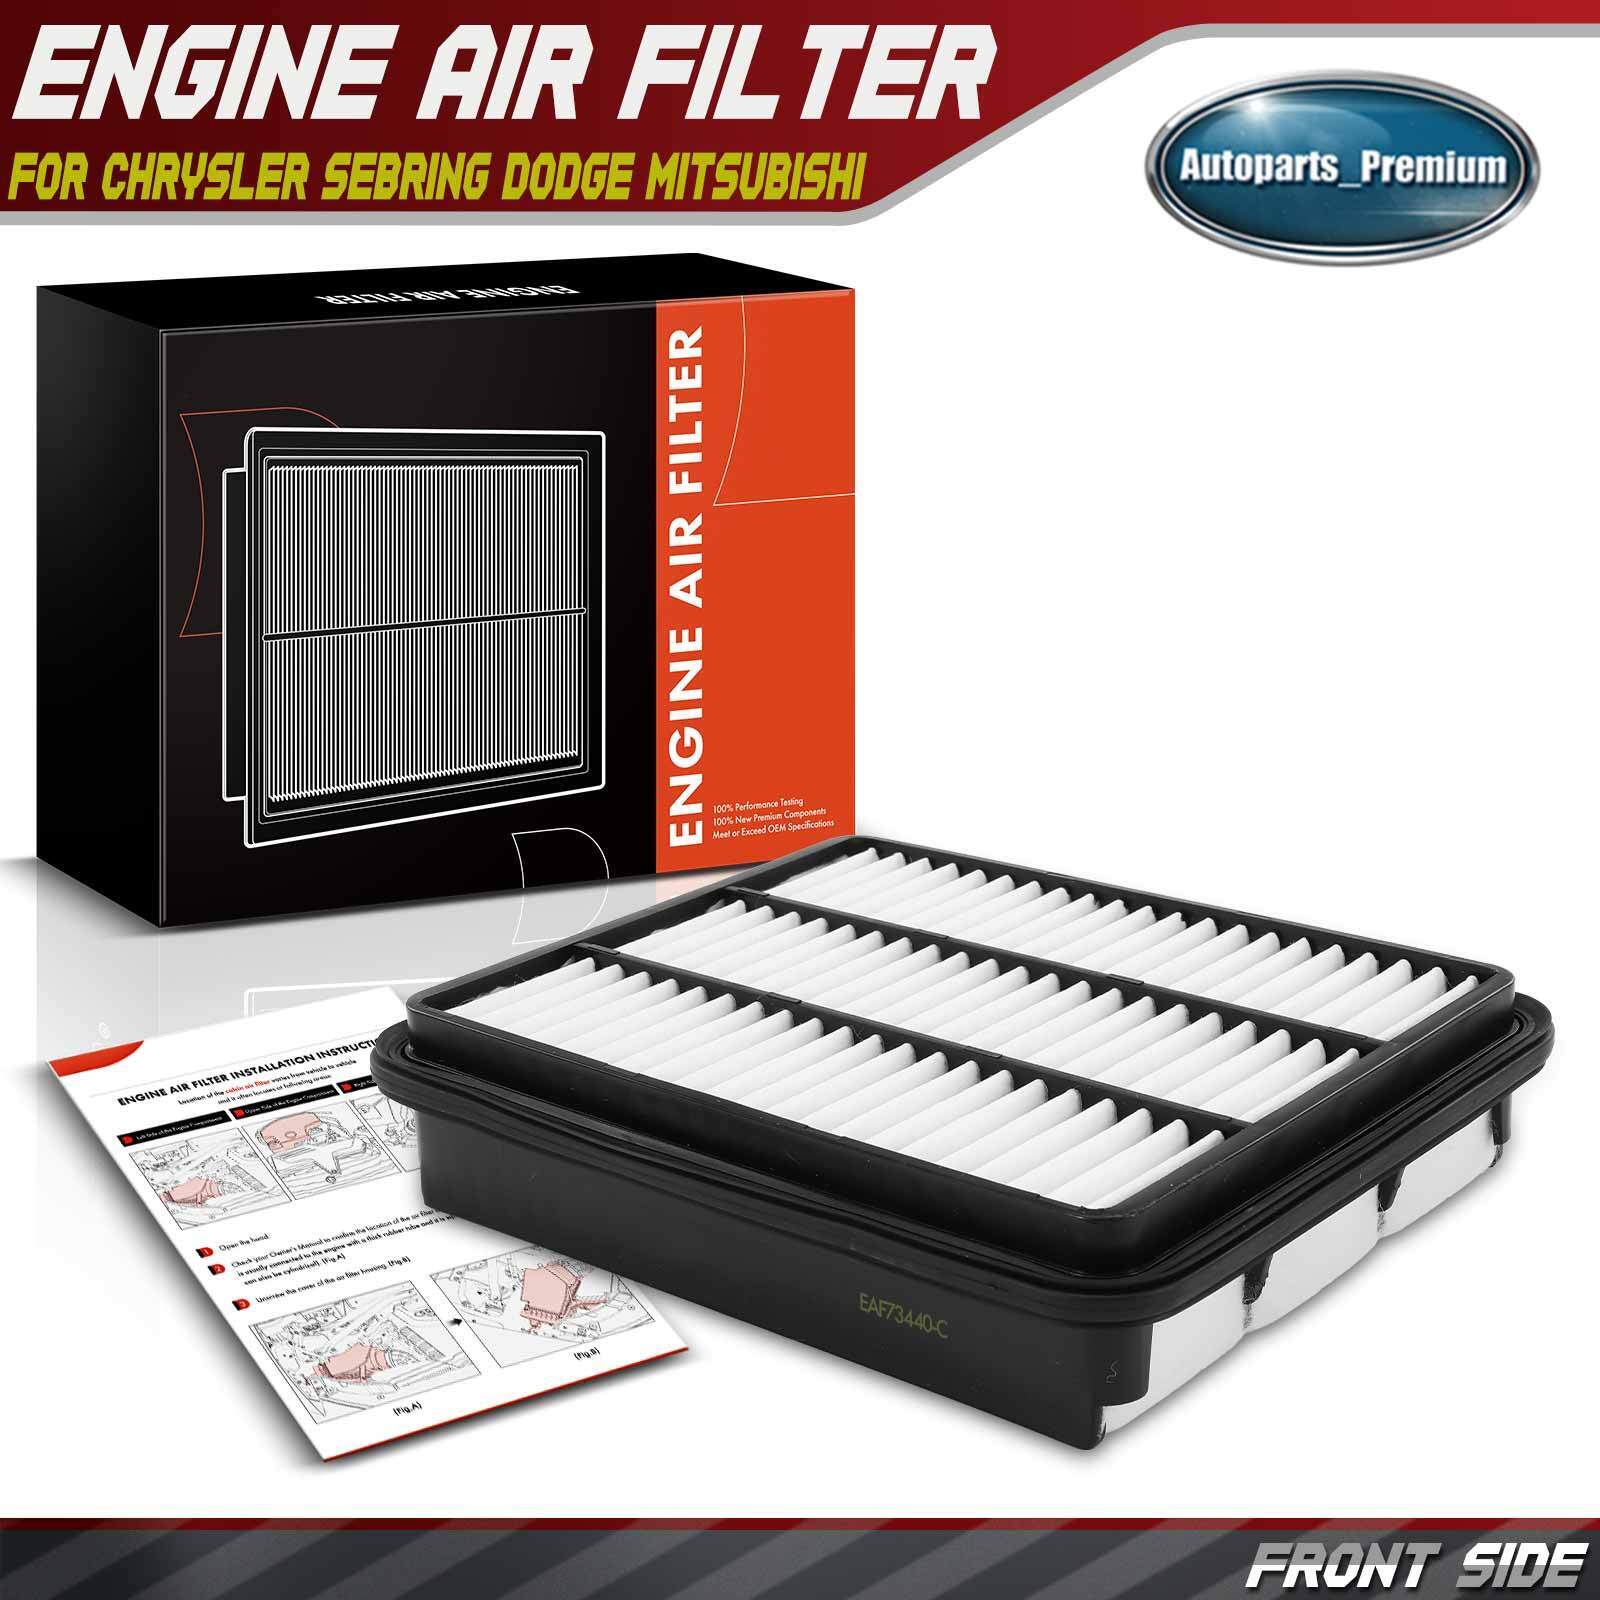 Engine Air Filter for Chrysler Sebring Dodge Avenger Mitsubishi Expo Mazda Eagle